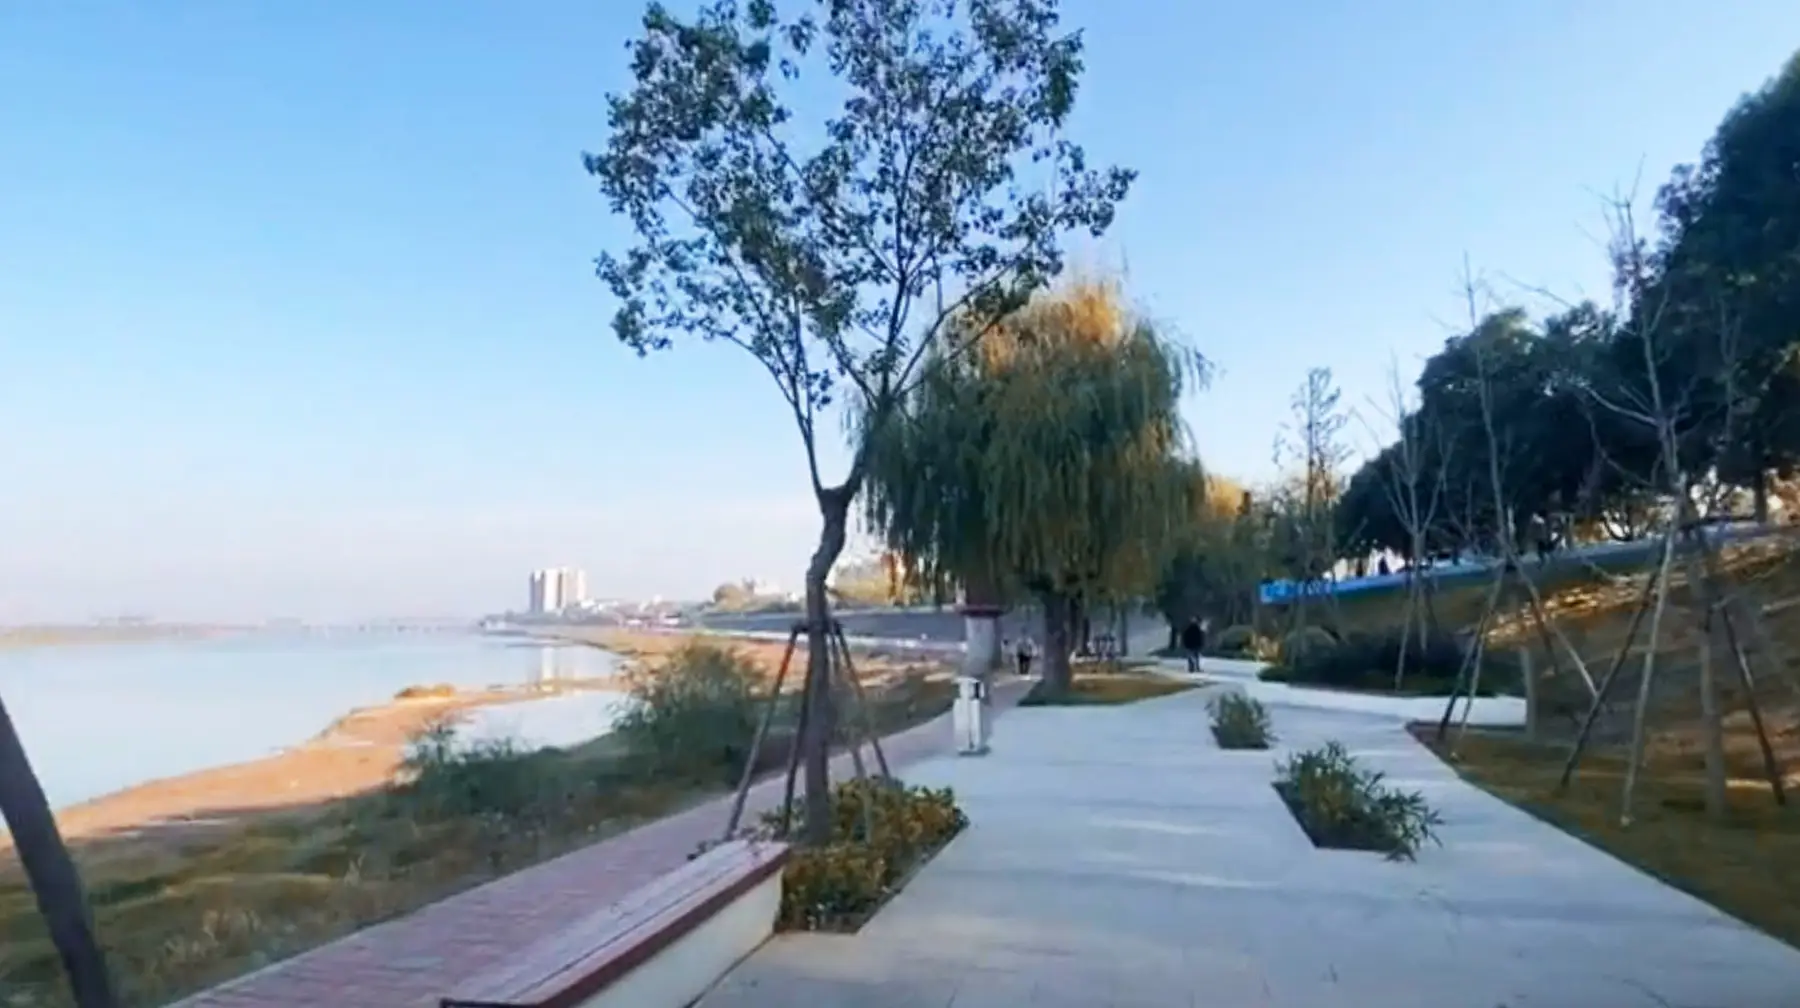 武汉郊区有座河滩公园 四季都能观赏风景